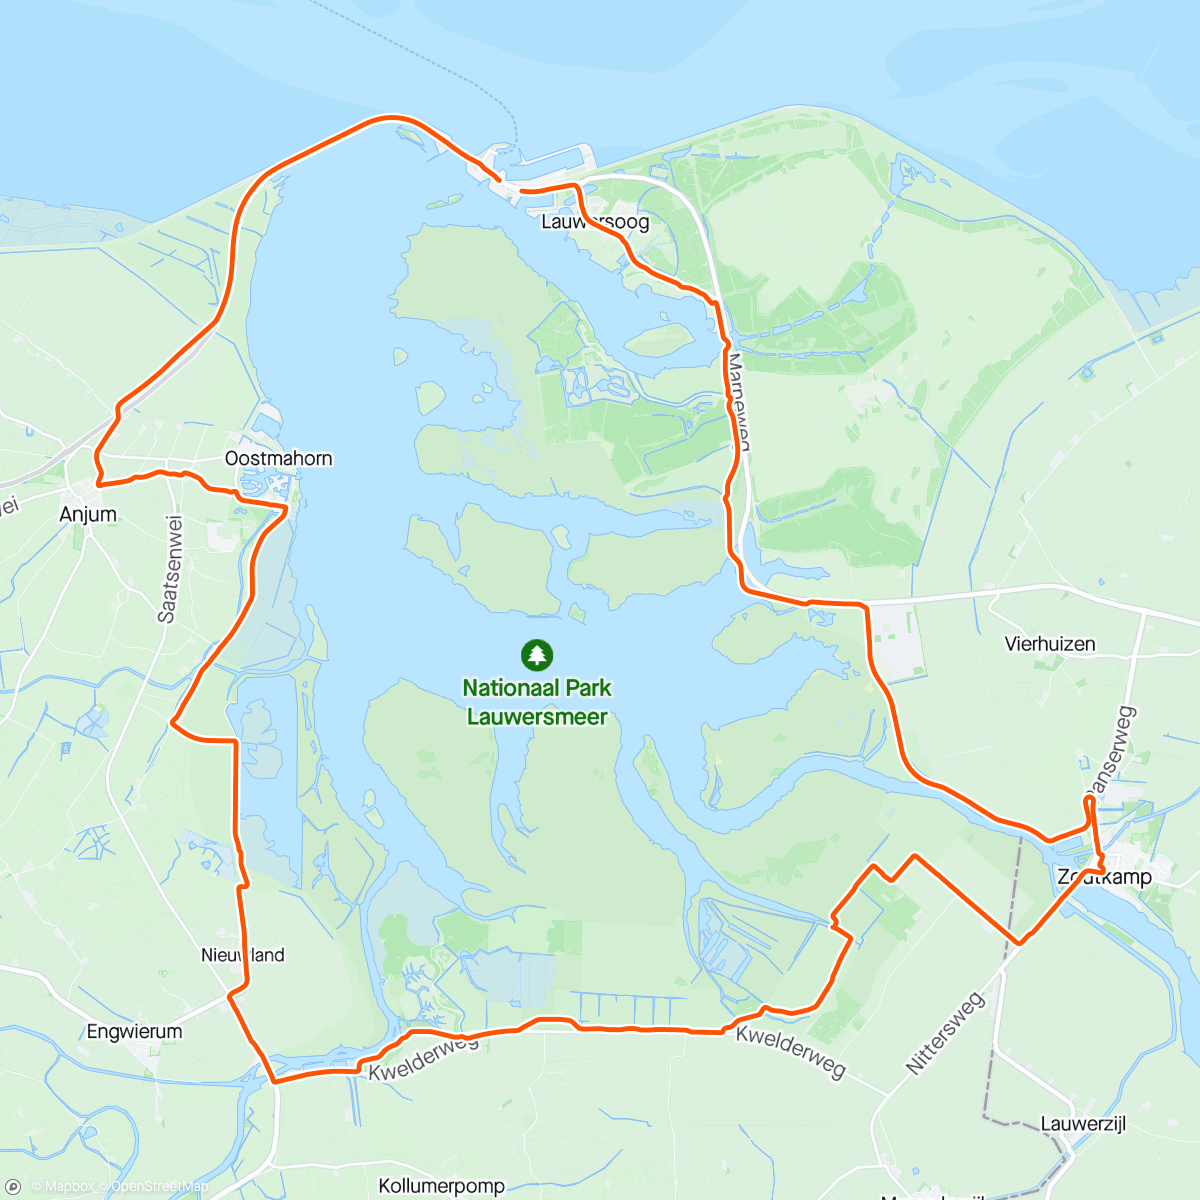 「Rondje Lauwersmeer」活動的地圖